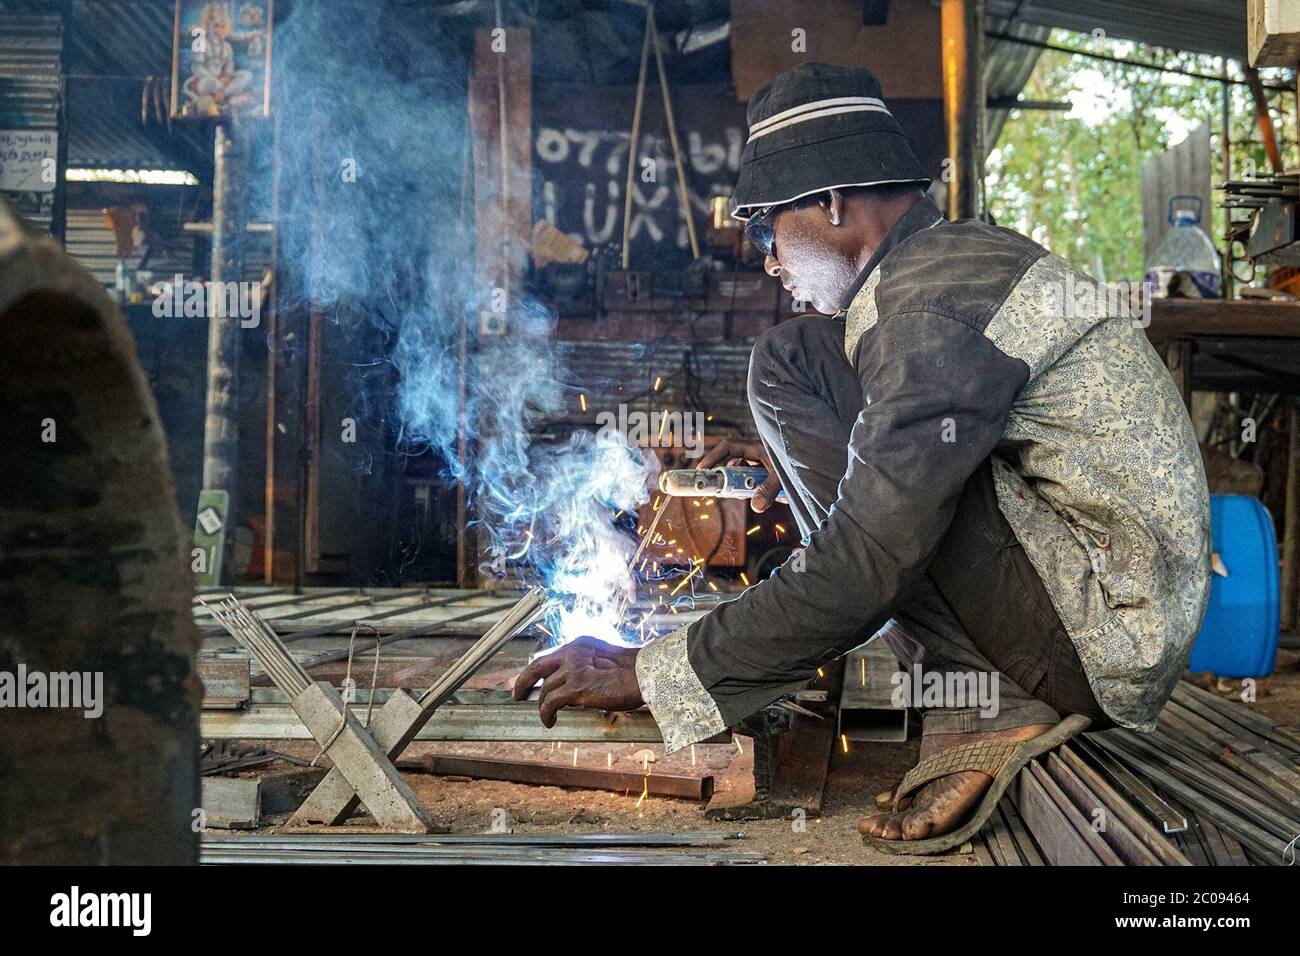 Justin Pathinathan salda il metallo nel suo laboratorio ad Adampan, una città della provincia settentrionale dello Sri Lanka. Anche se Pathinathan è stato un saldatore per 22 anni, si preoccupa che il lavoro potrebbe influenzare la sua vista male. (Vetrichelvi Chandrakala, GPJ Sri Lanka) Foto Stock